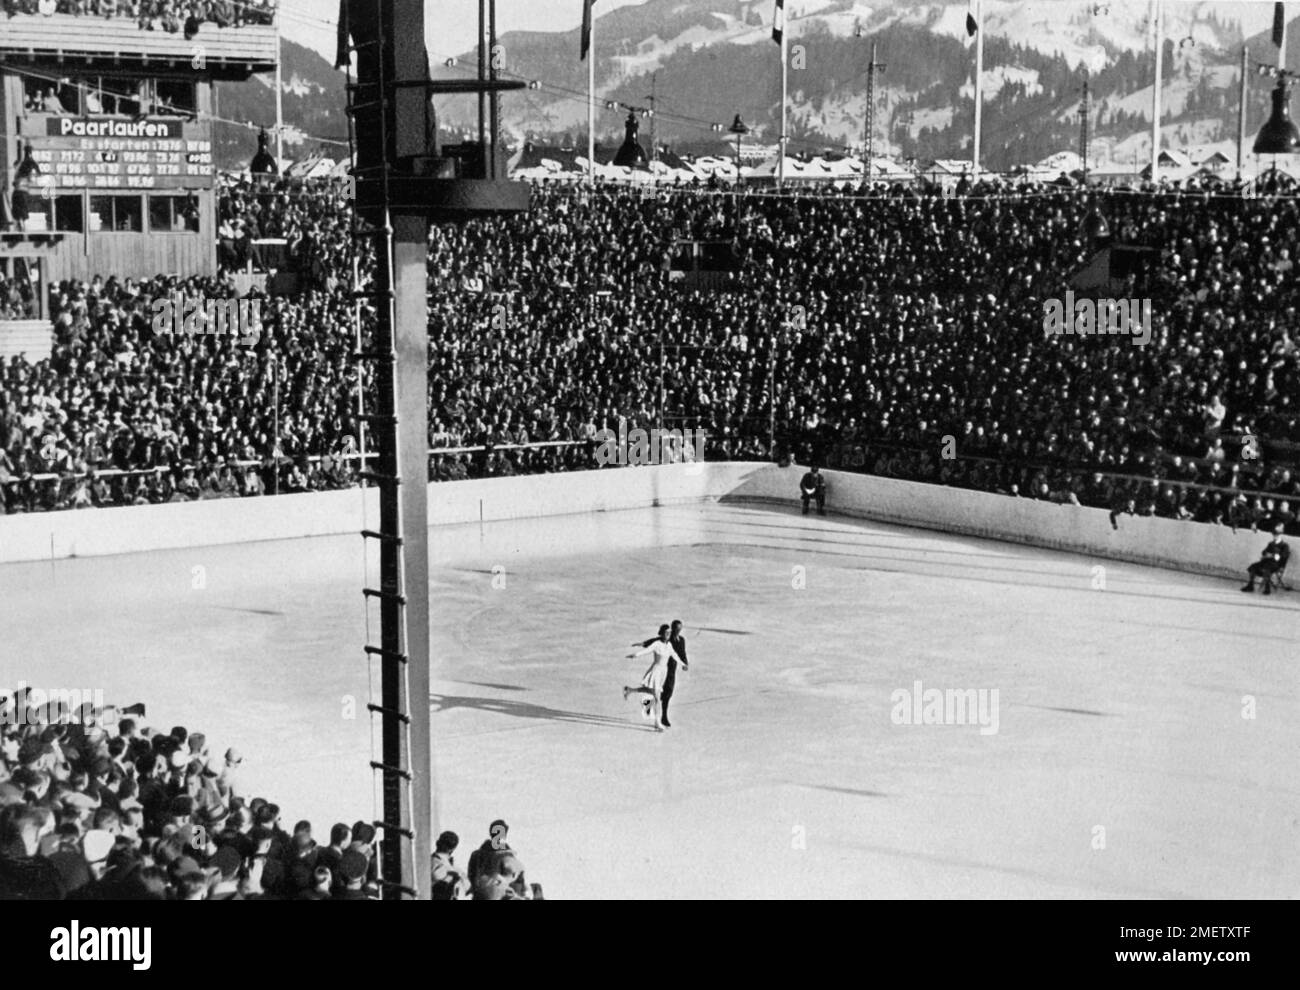 Pattinaggio su ghiaccio, pattinaggio a coppie, Maxie Herber-Ernst Baier alle coppie olimpiche che pattinano sotto gli occhi del Fuehrer nello stadio di ghiaccio artificiale Foto Stock